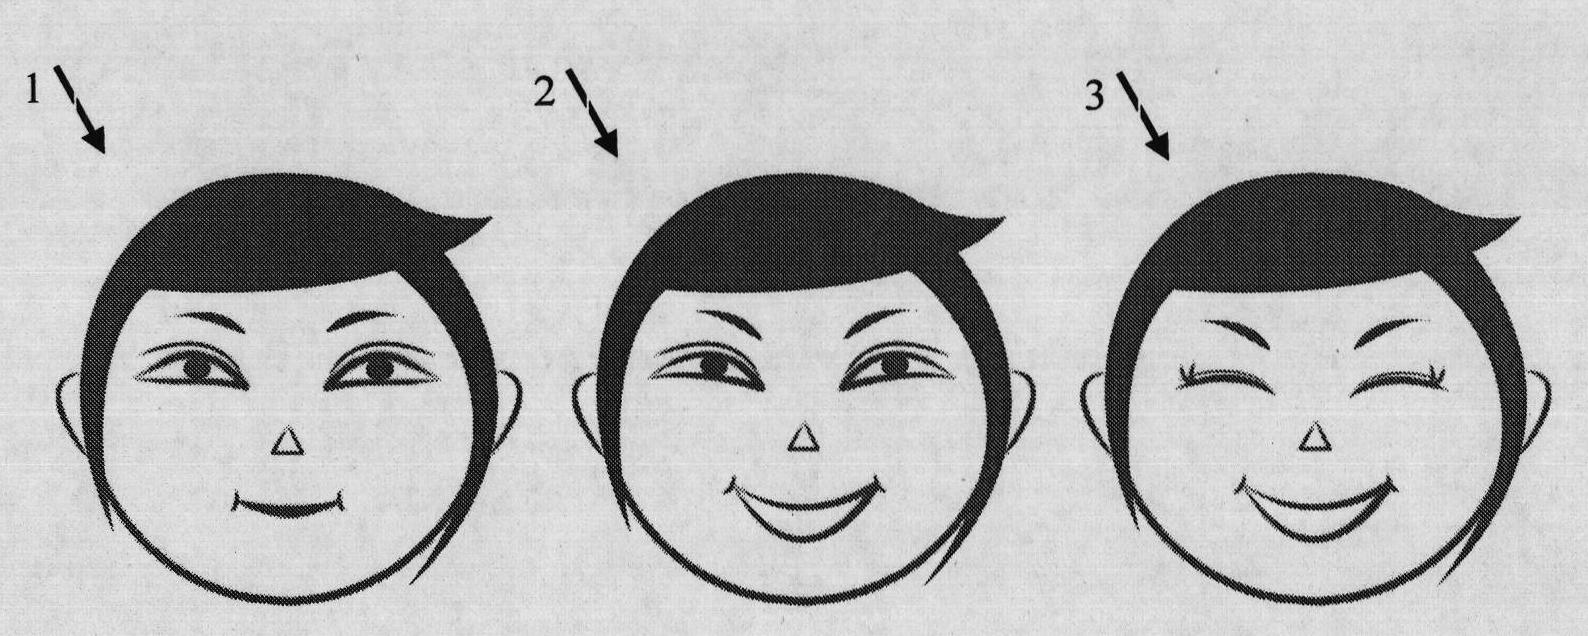 Single-photo-based human face animating method